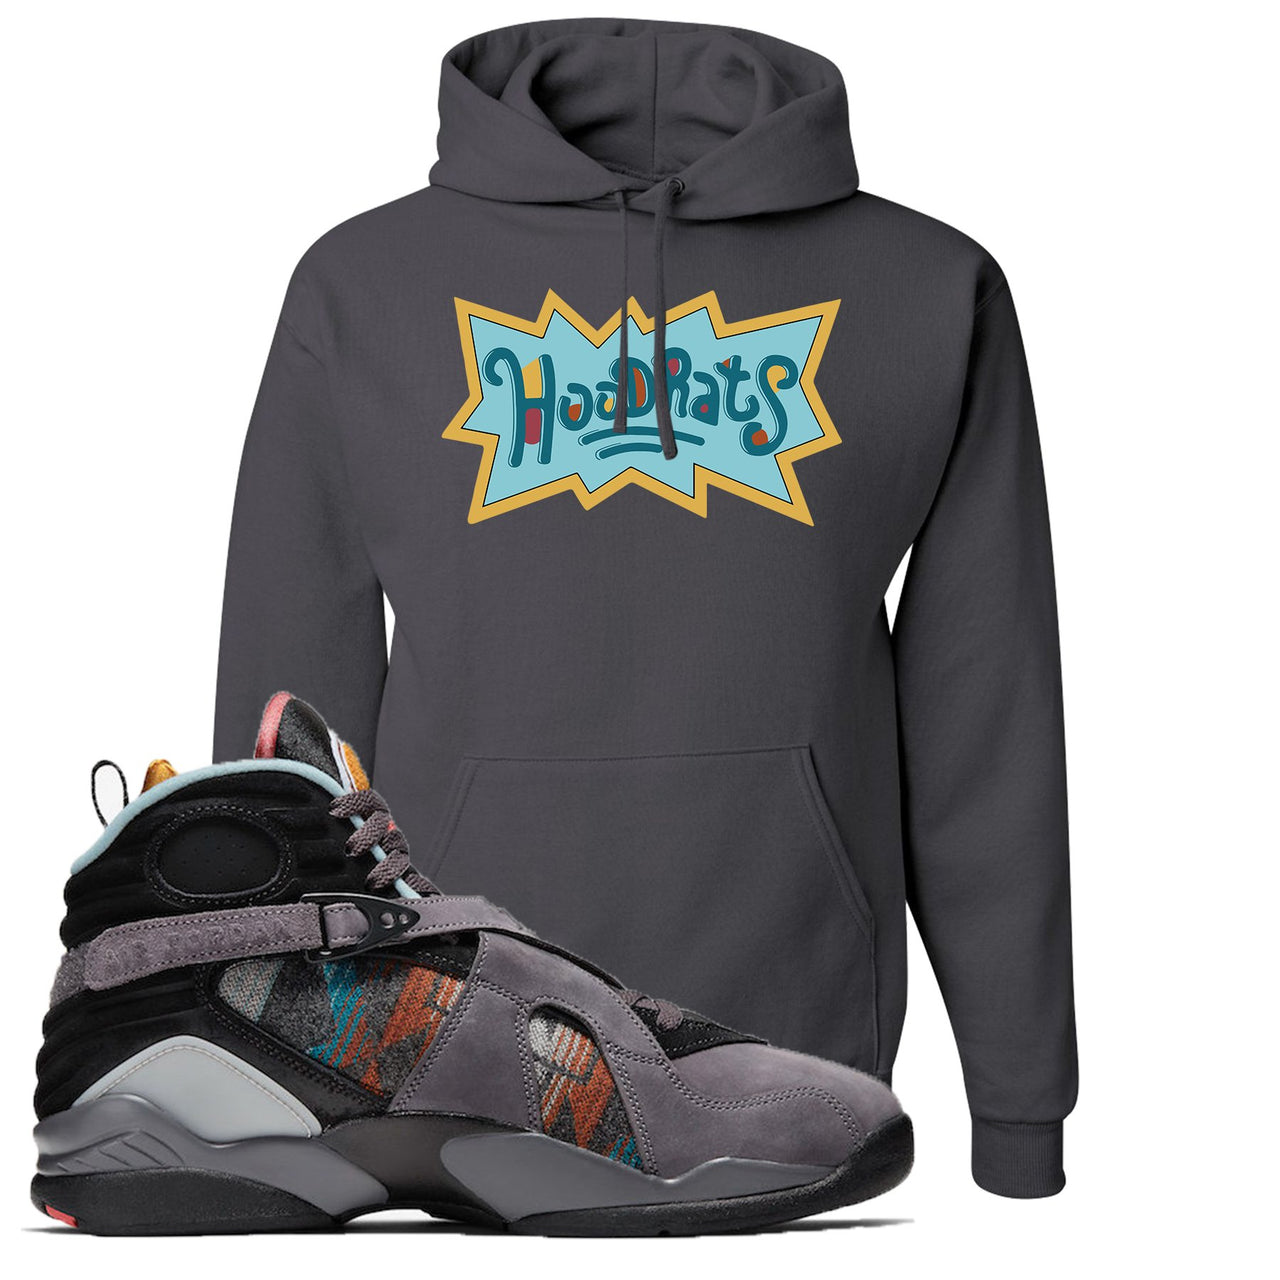 Jordan 8 N7 Pendleton Hood Rats Charcoal Gray Sneaker Hook Up Pullover Hoodie